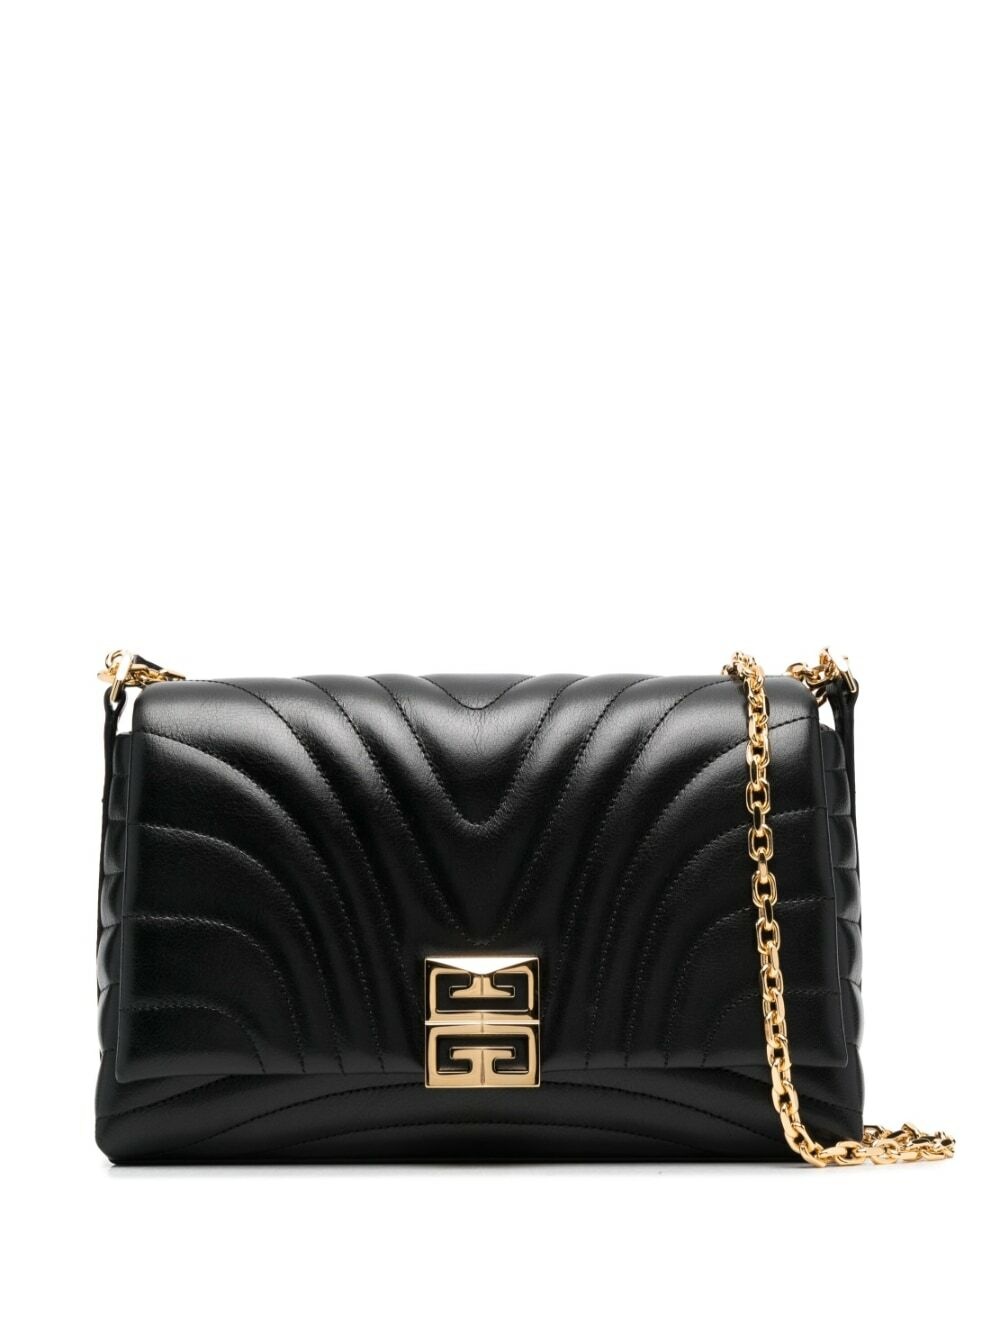 GIVENCHY - 4g Soft Leather Shoulder Bag Givenchy